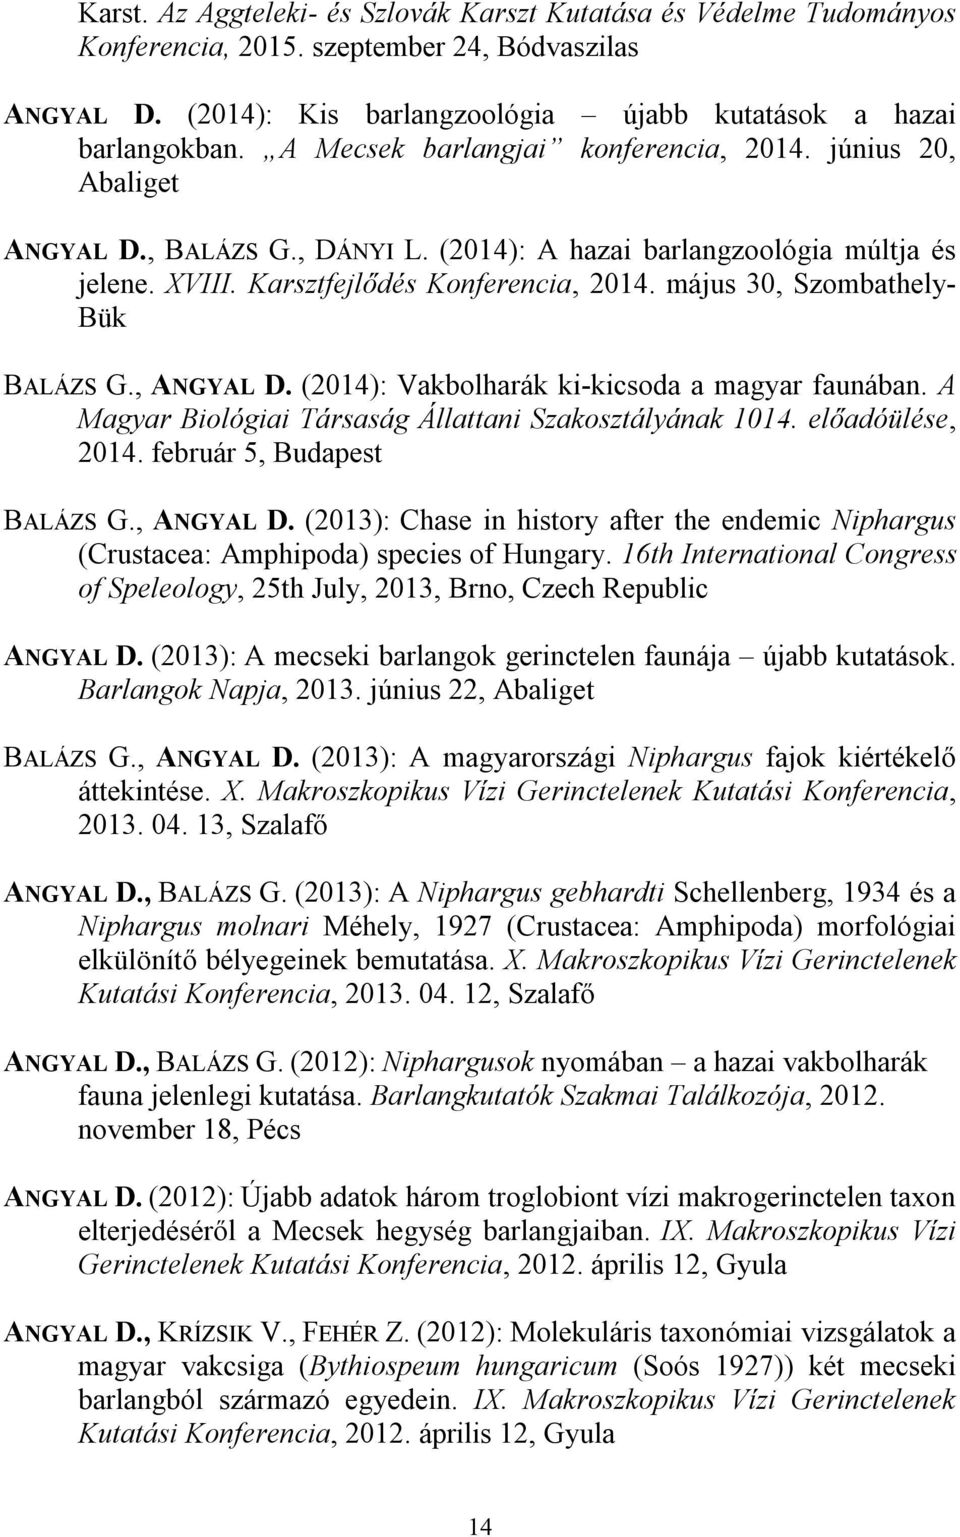 május 30, Szombathely- Bük BALÁZS G., ANGYAL D. (2014): Vakbolharák ki-kicsoda a magyar faunában. A Magyar Biológiai Társaság Állattani Szakosztályának 1014. előadóülése, 2014.